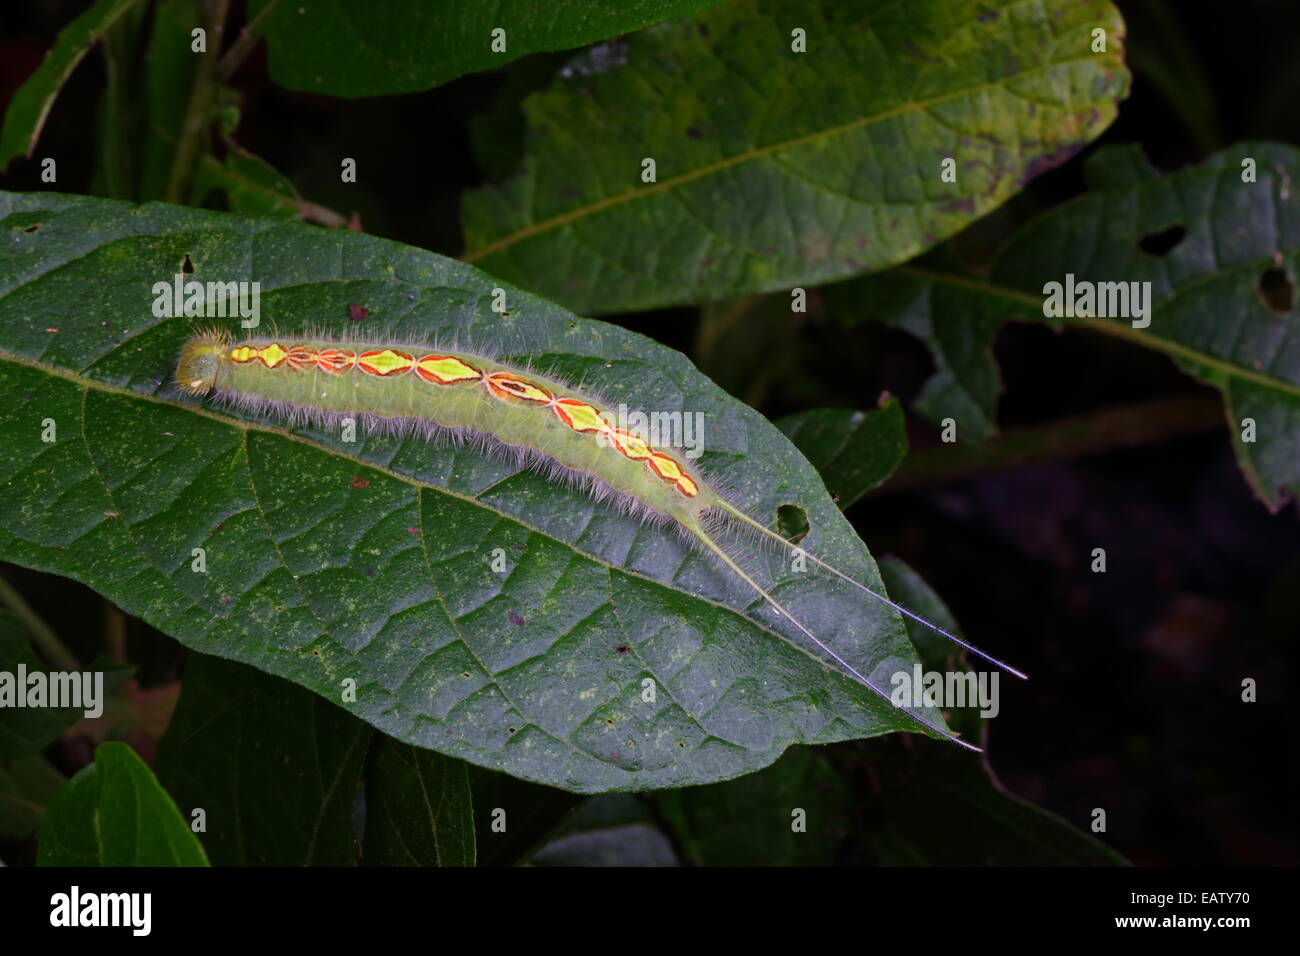 Caterpillar no identificada con larga cola de apéndices comiendo una hoja. Foto de stock